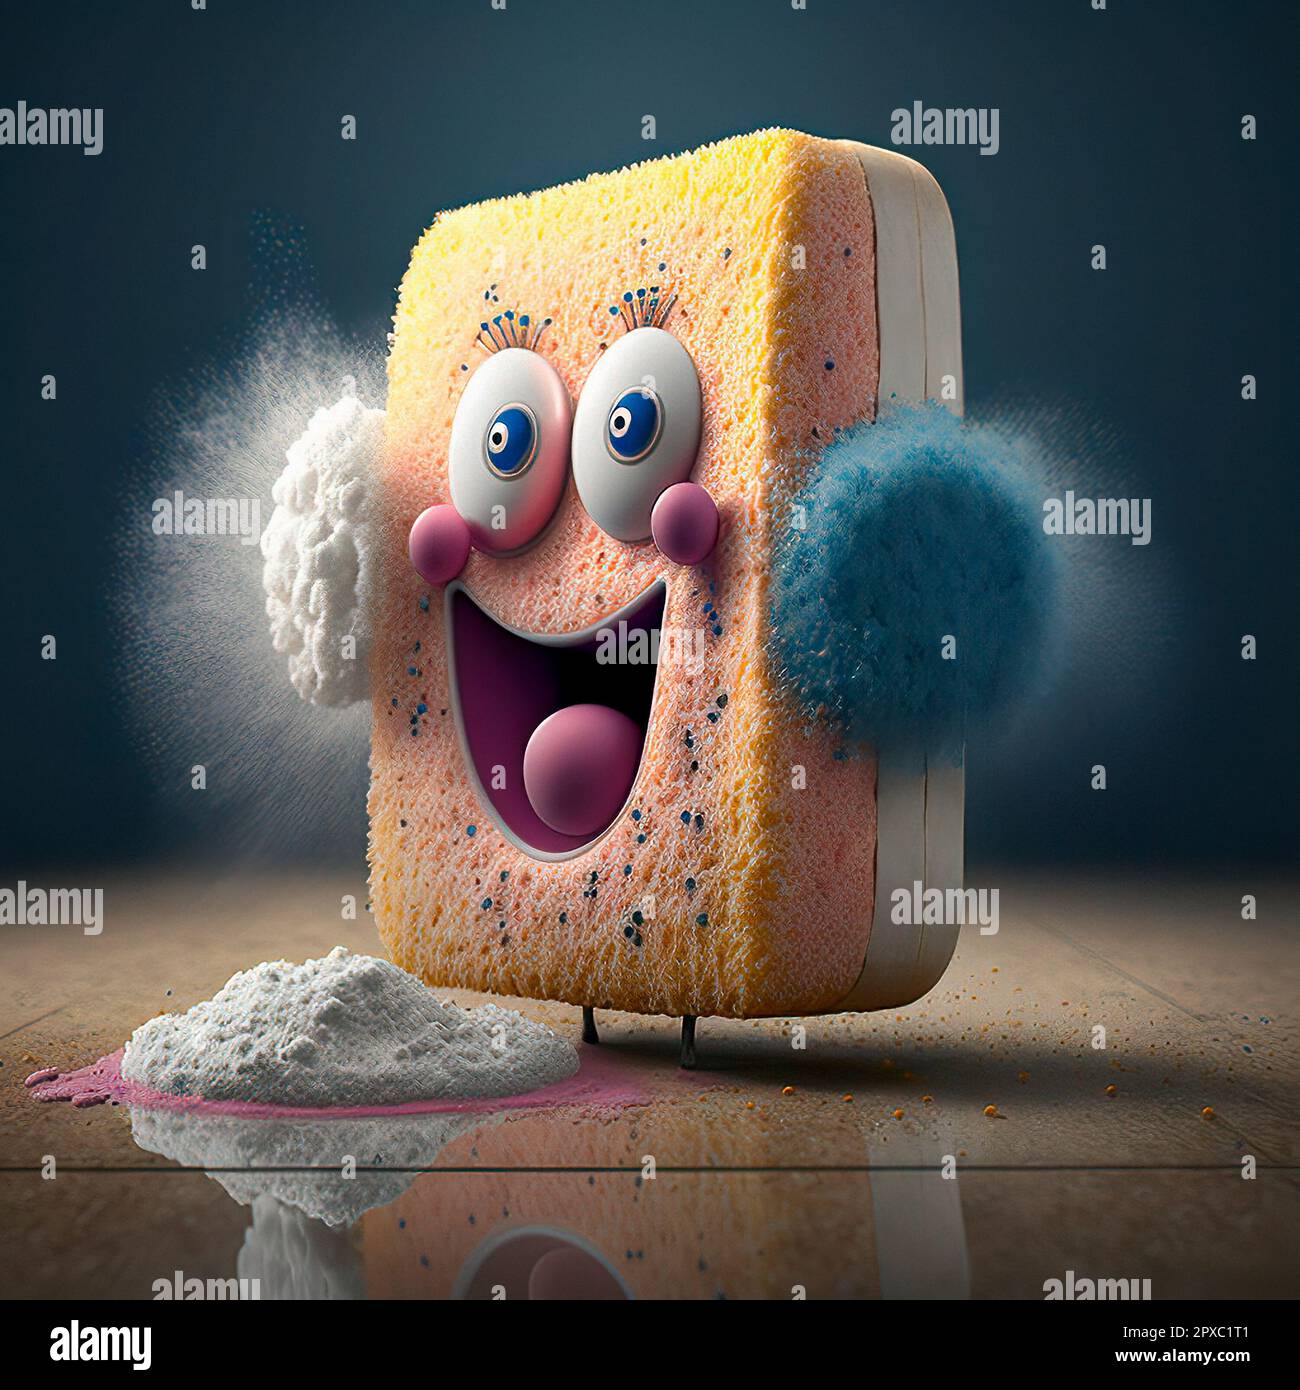 Un personaggio gioioso Sponge con una sostanza polverosa davanti ad esso, trasuda un senso di giocosità e pulizia Foto Stock